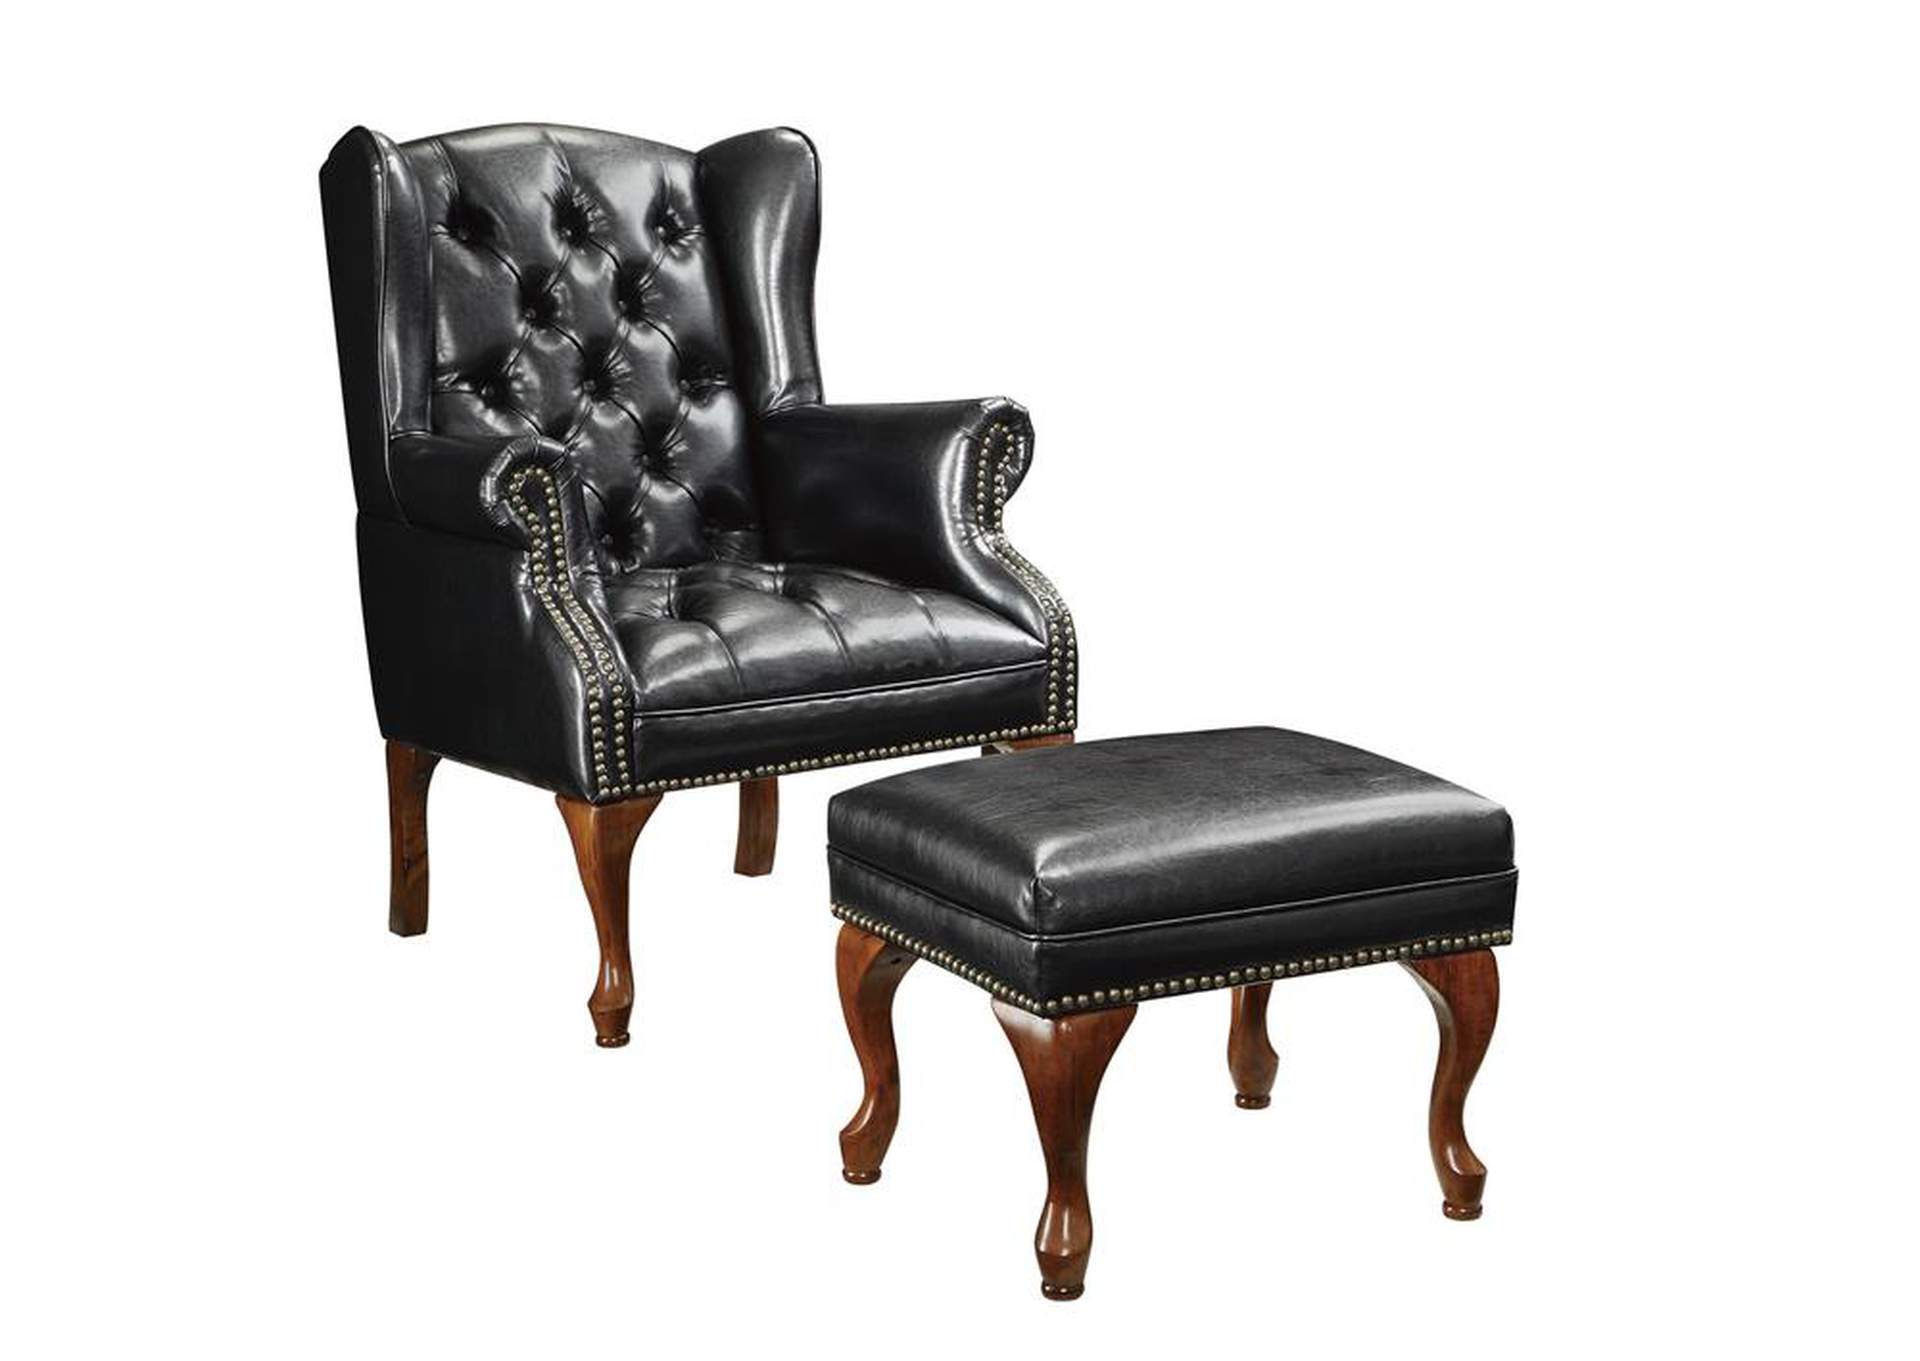 Espresso Traditional Espresso Accent Chair and Ottoman,Coaster Furniture